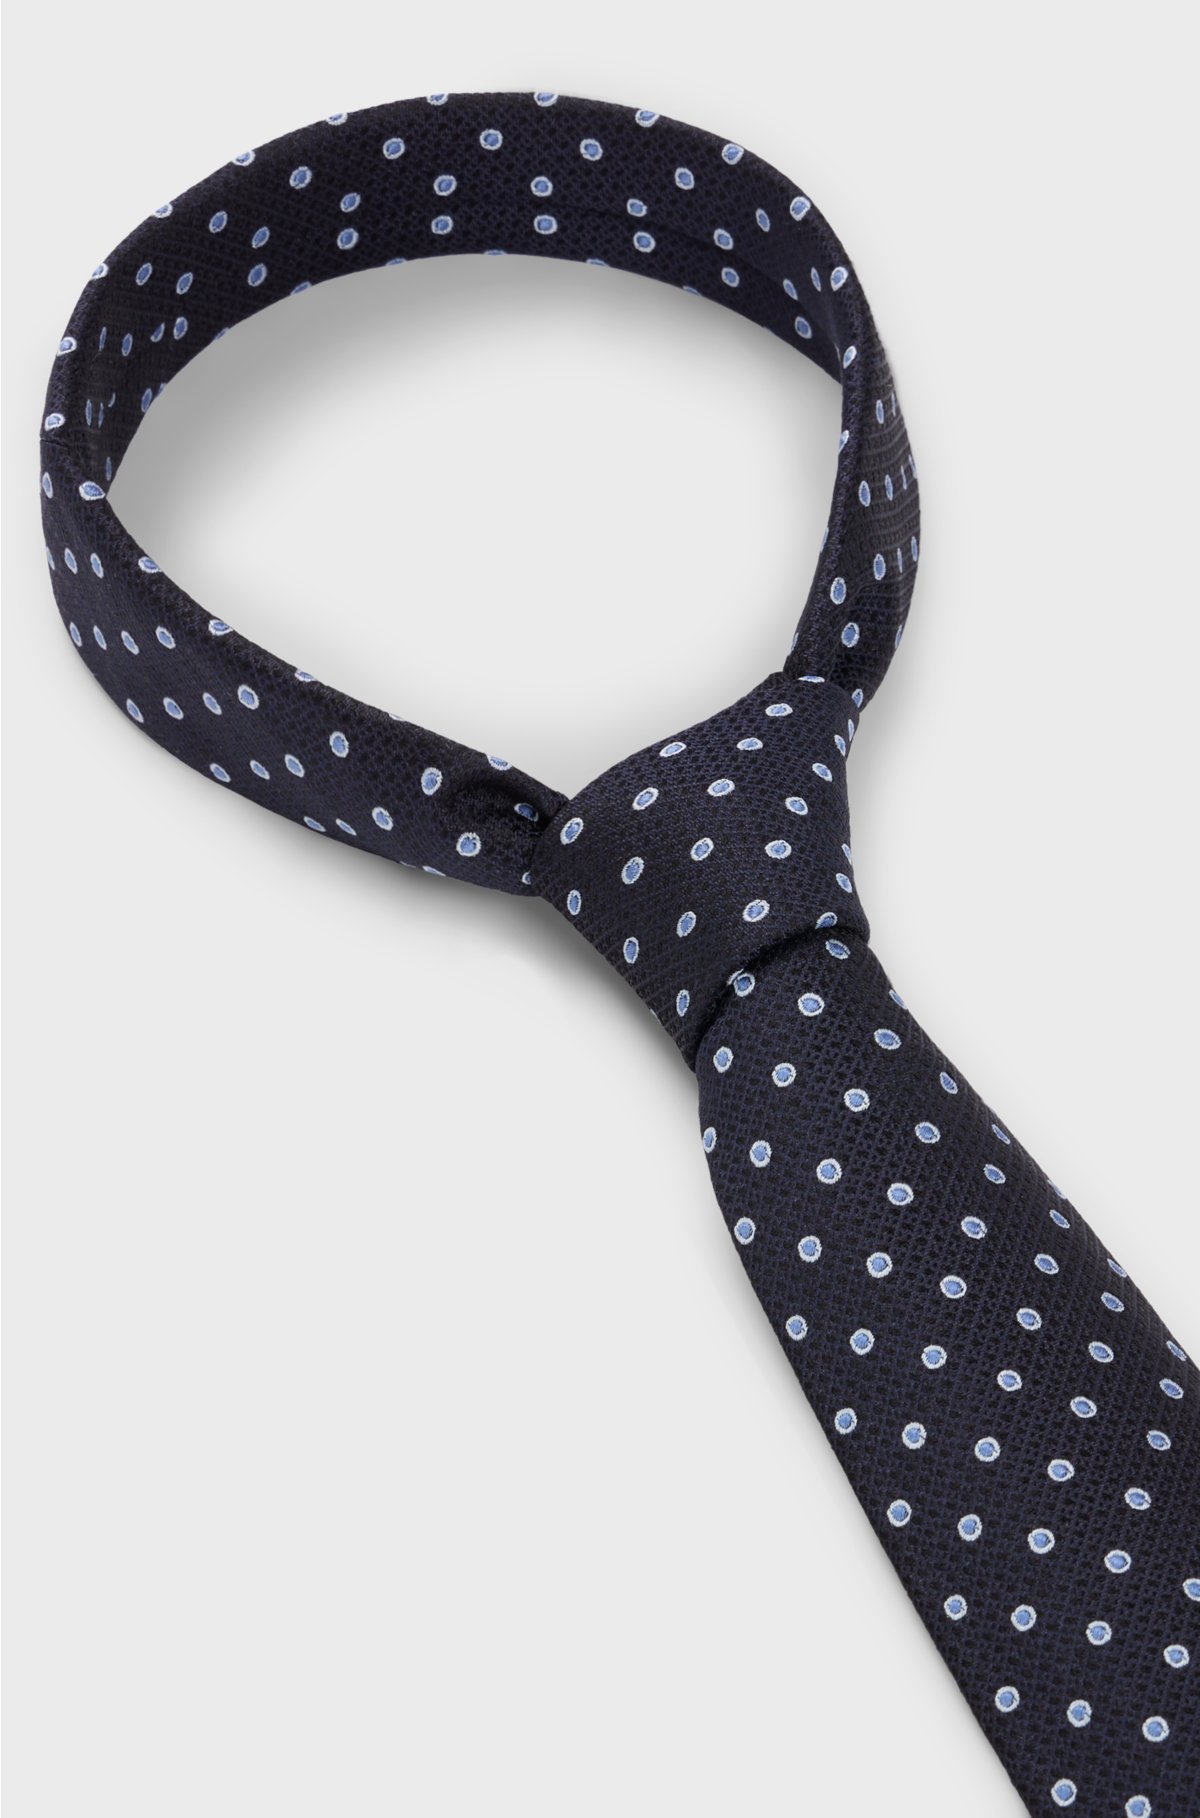 Silk-jacquard tie with micro pattern, Dark Blue